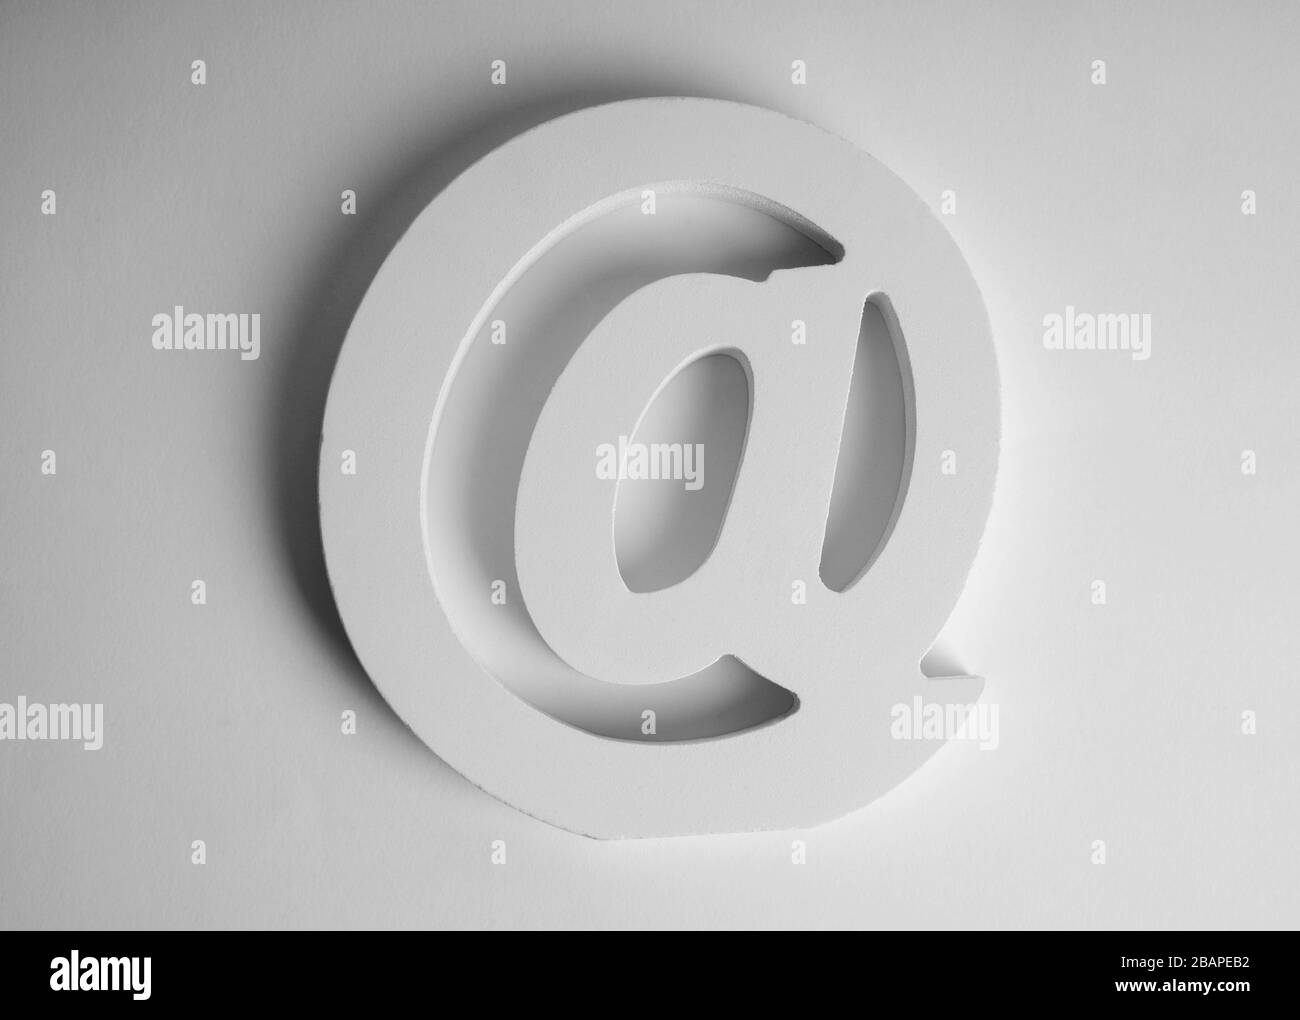 Simbolo e-mail su sfondo bianco Foto Stock